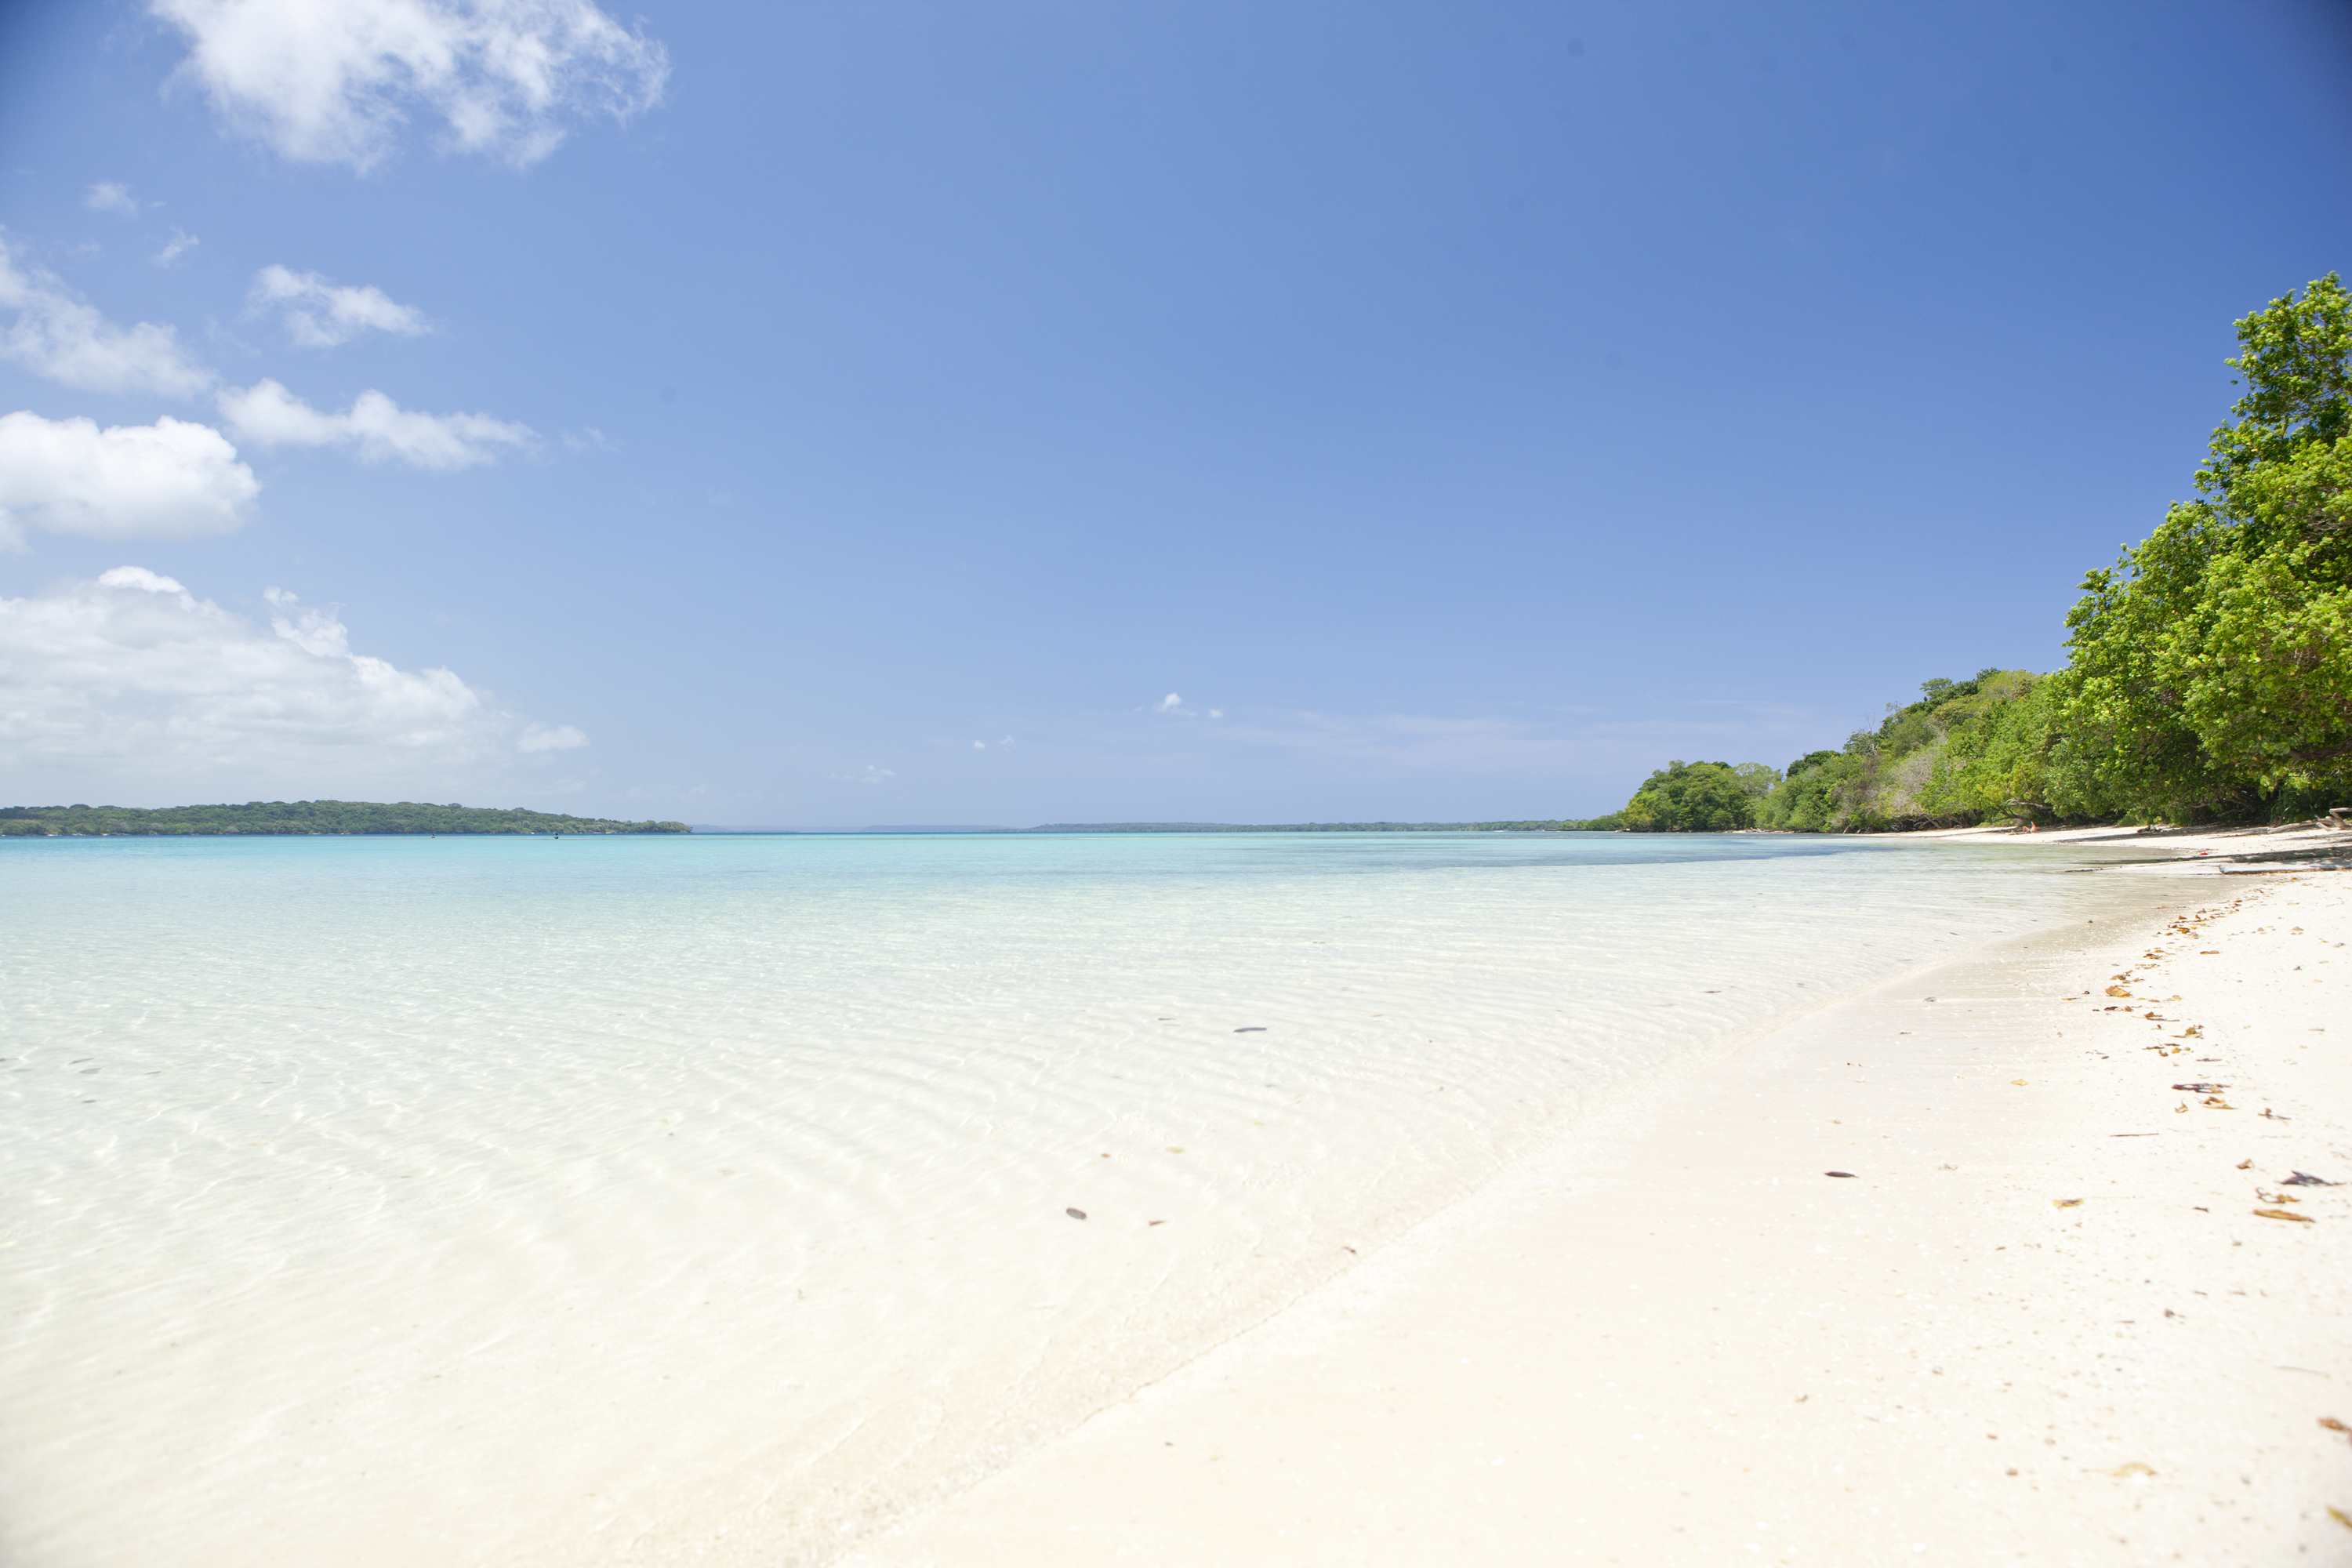 Vanuatu second biggest Pacific tourist destination - All ...